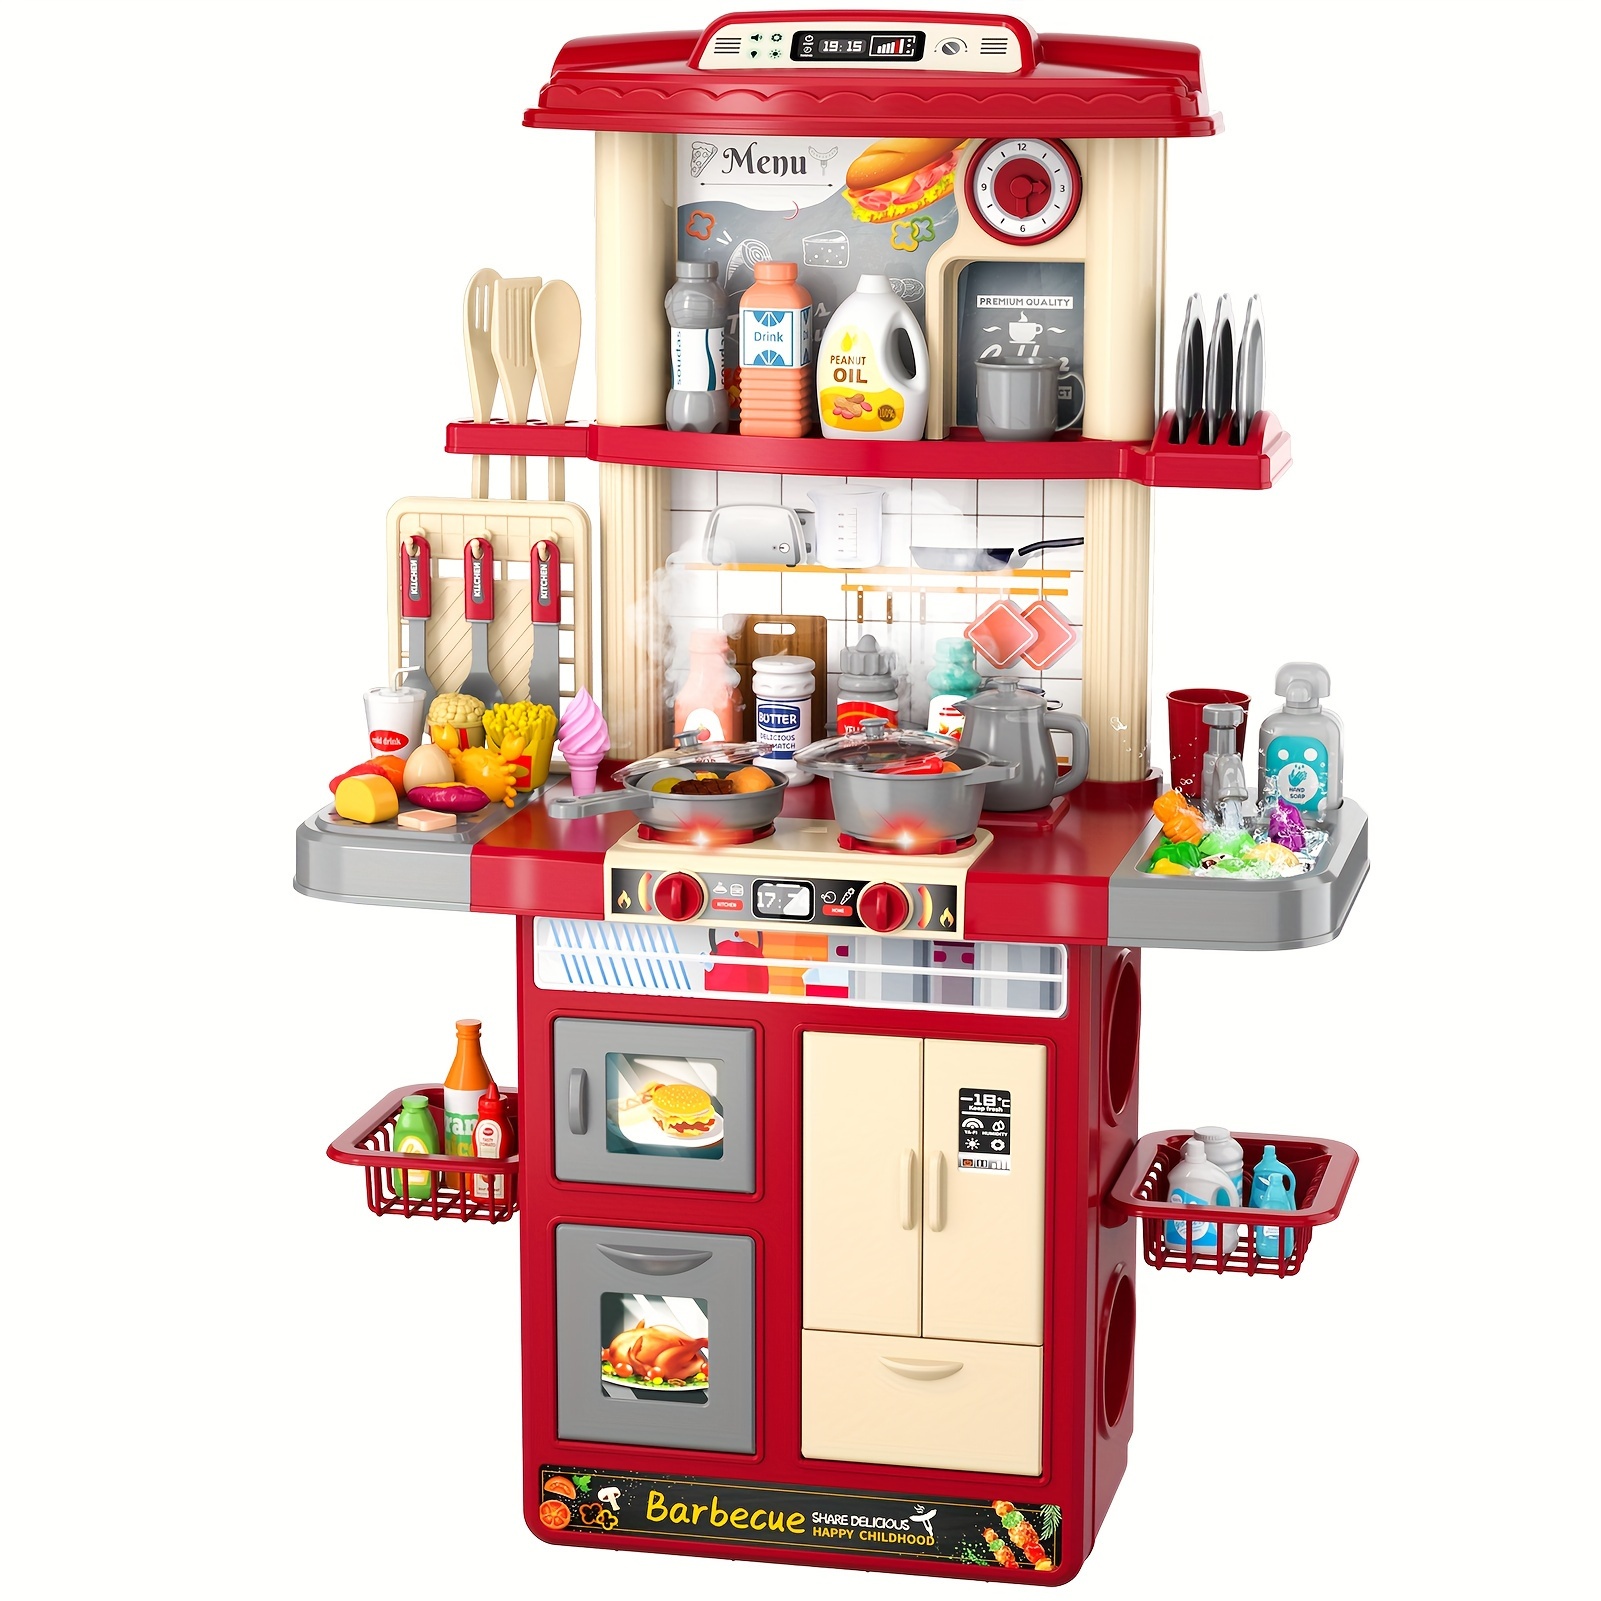 Kids Toys Kitchen Playset, Accessori Per Set Da Cucina Giocattolo